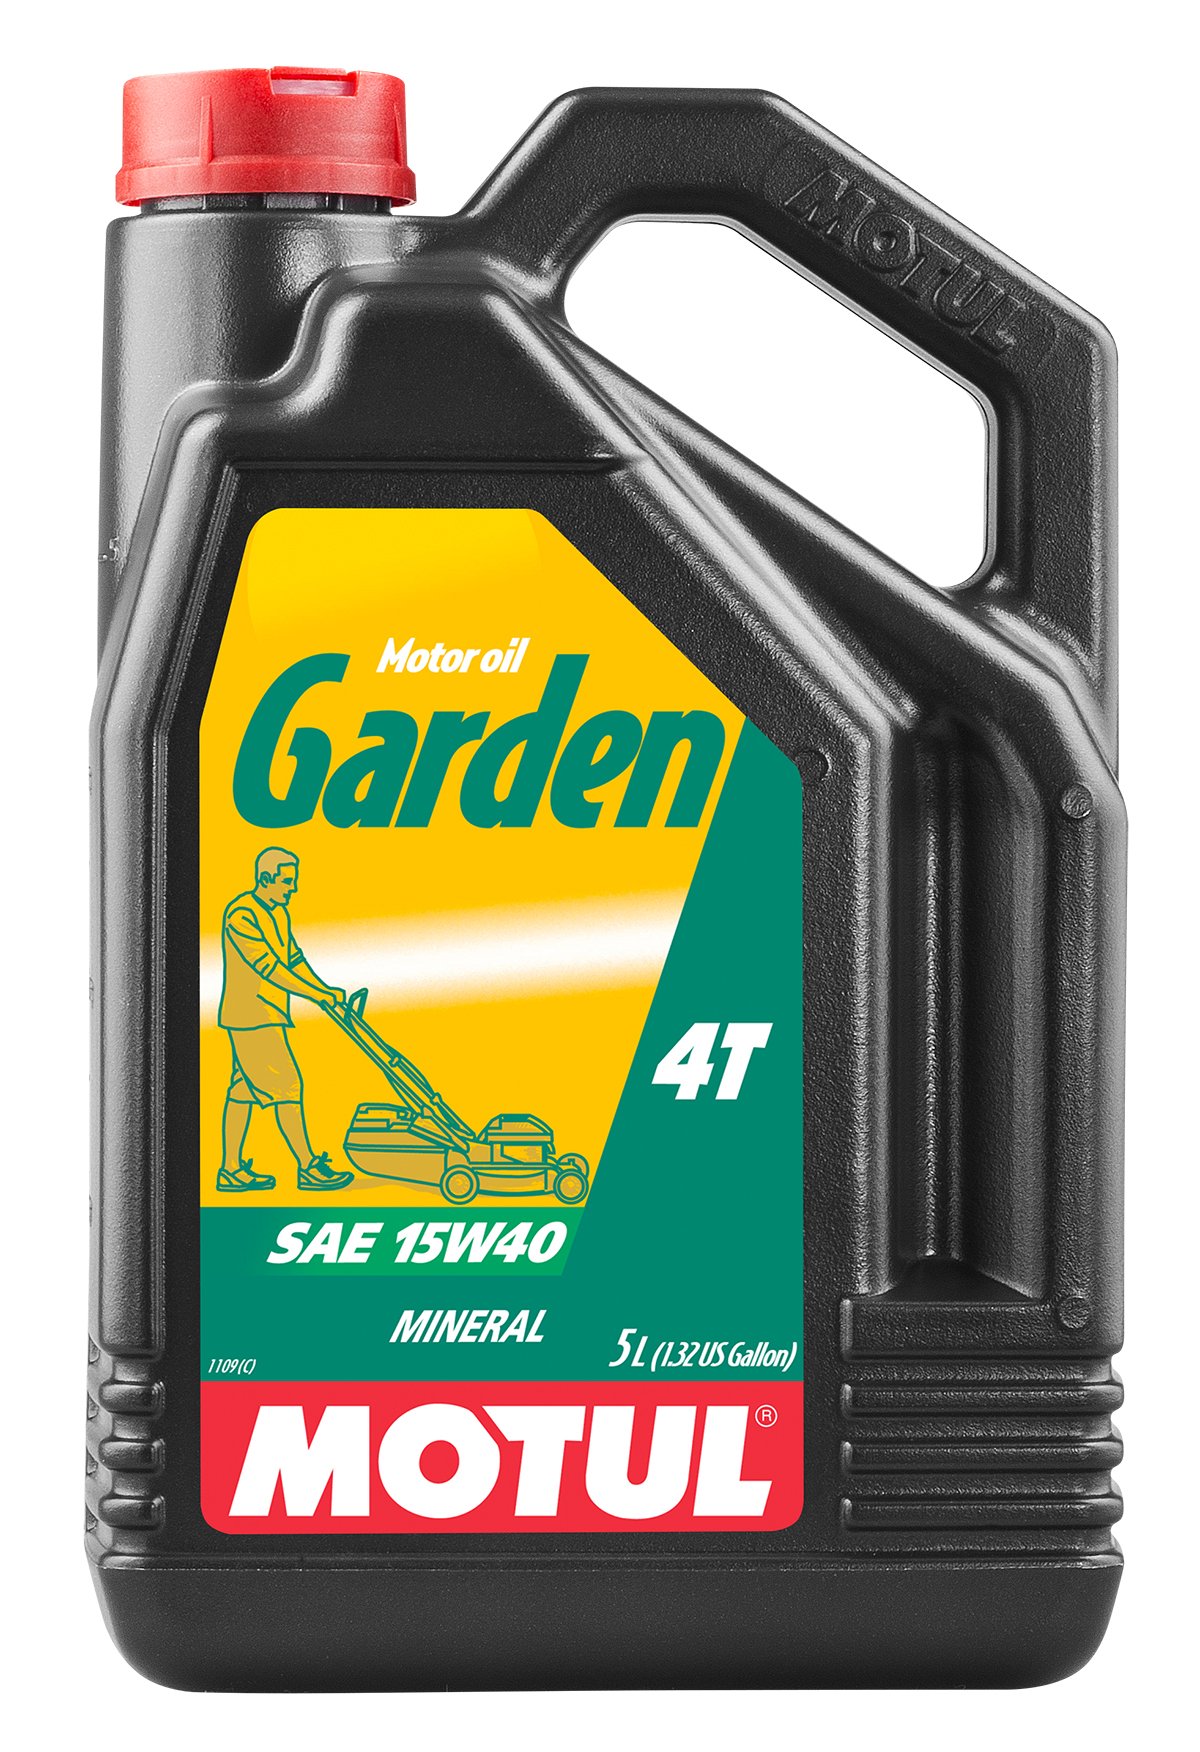 Motul 101312 Motoröl Garden 4T 15W-40, 5 L von Motul